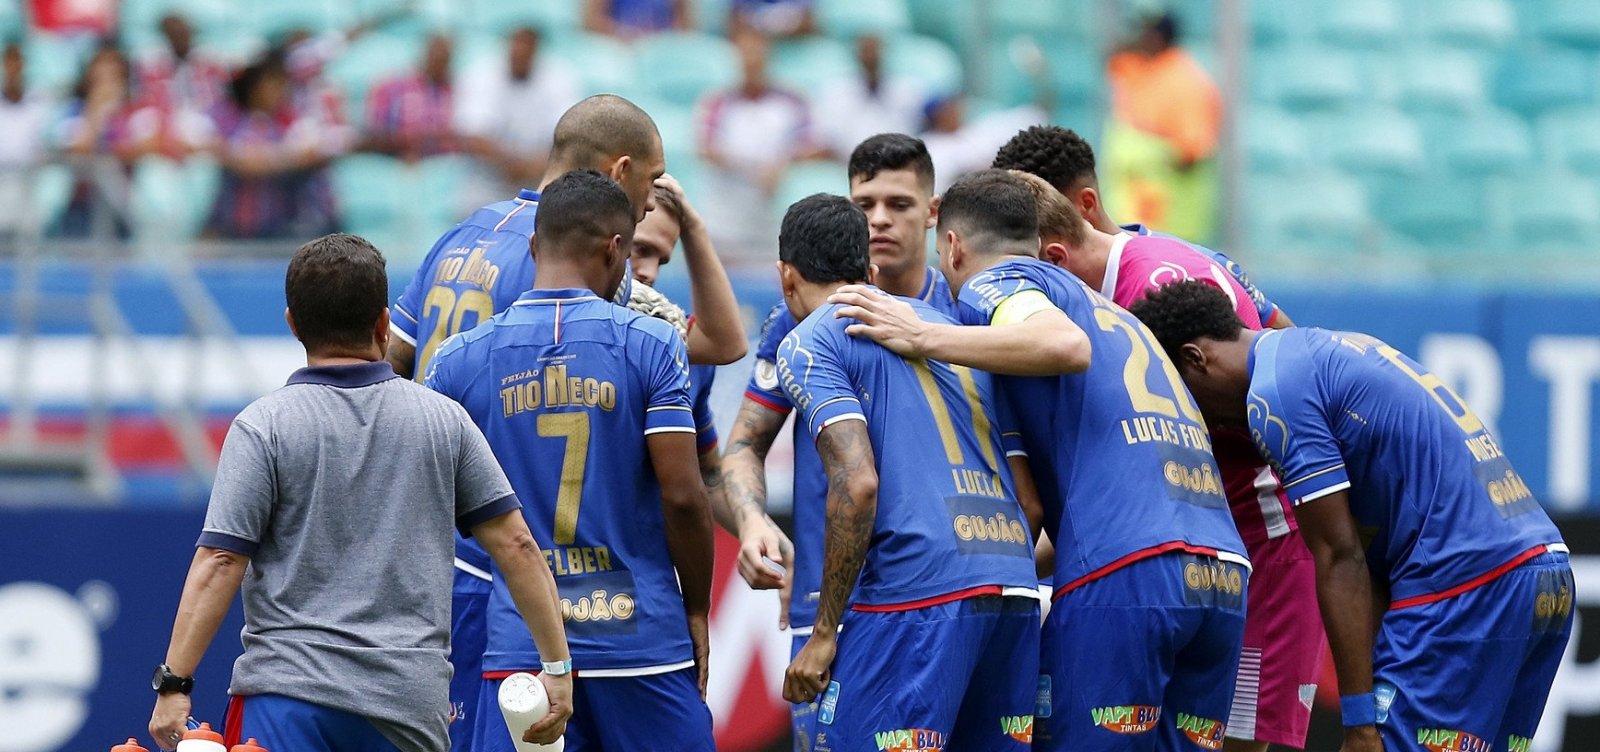 STJD confirma que Bahia não fez contratações irregulares